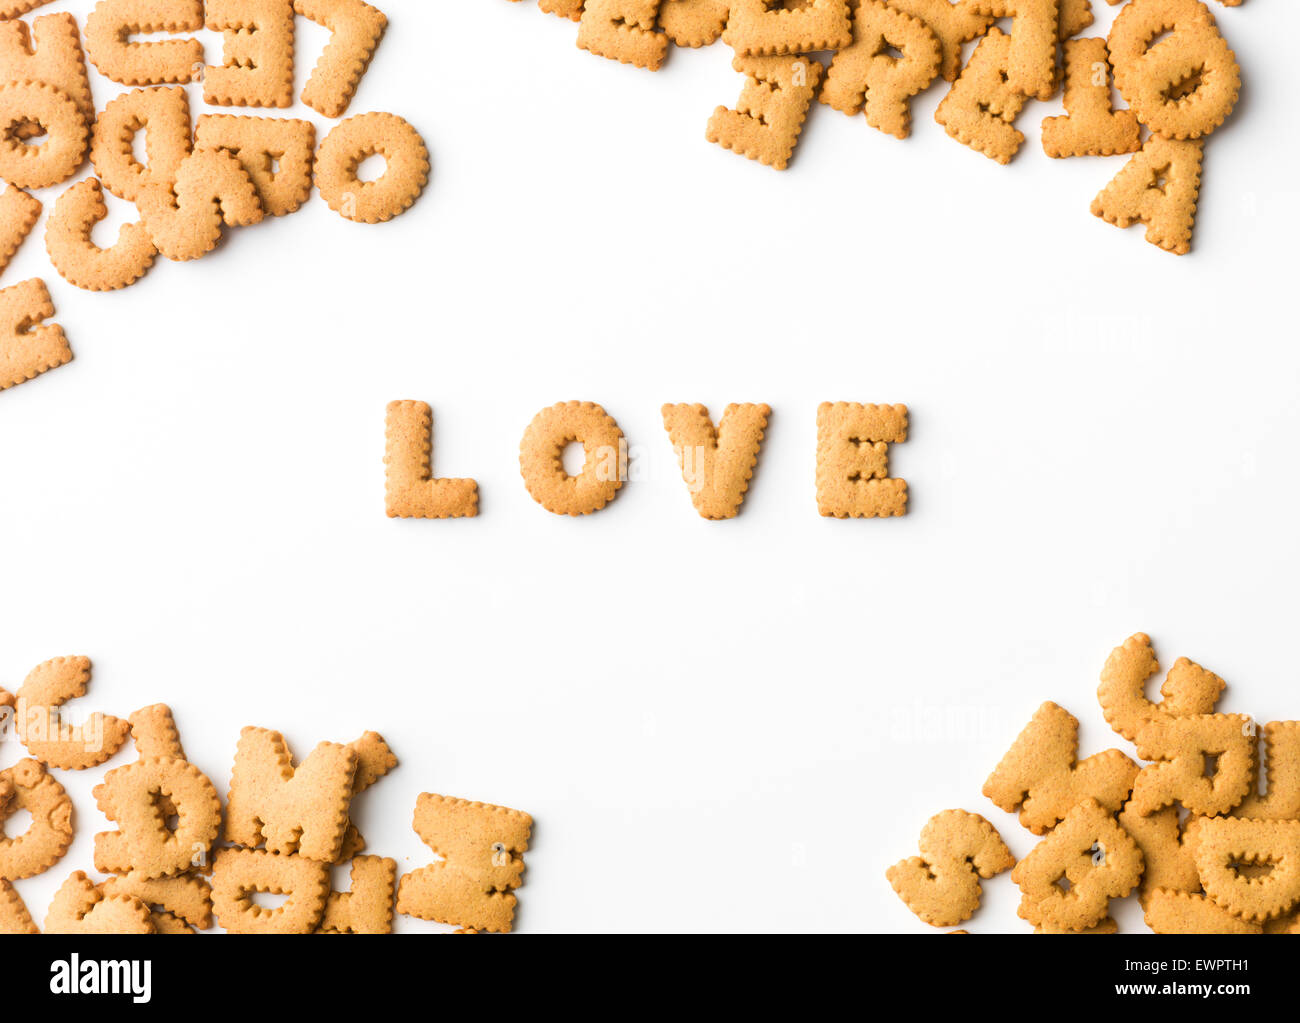 Mot d'amour écrit avec lettre de biscuits, sur fond blanc Banque D'Images